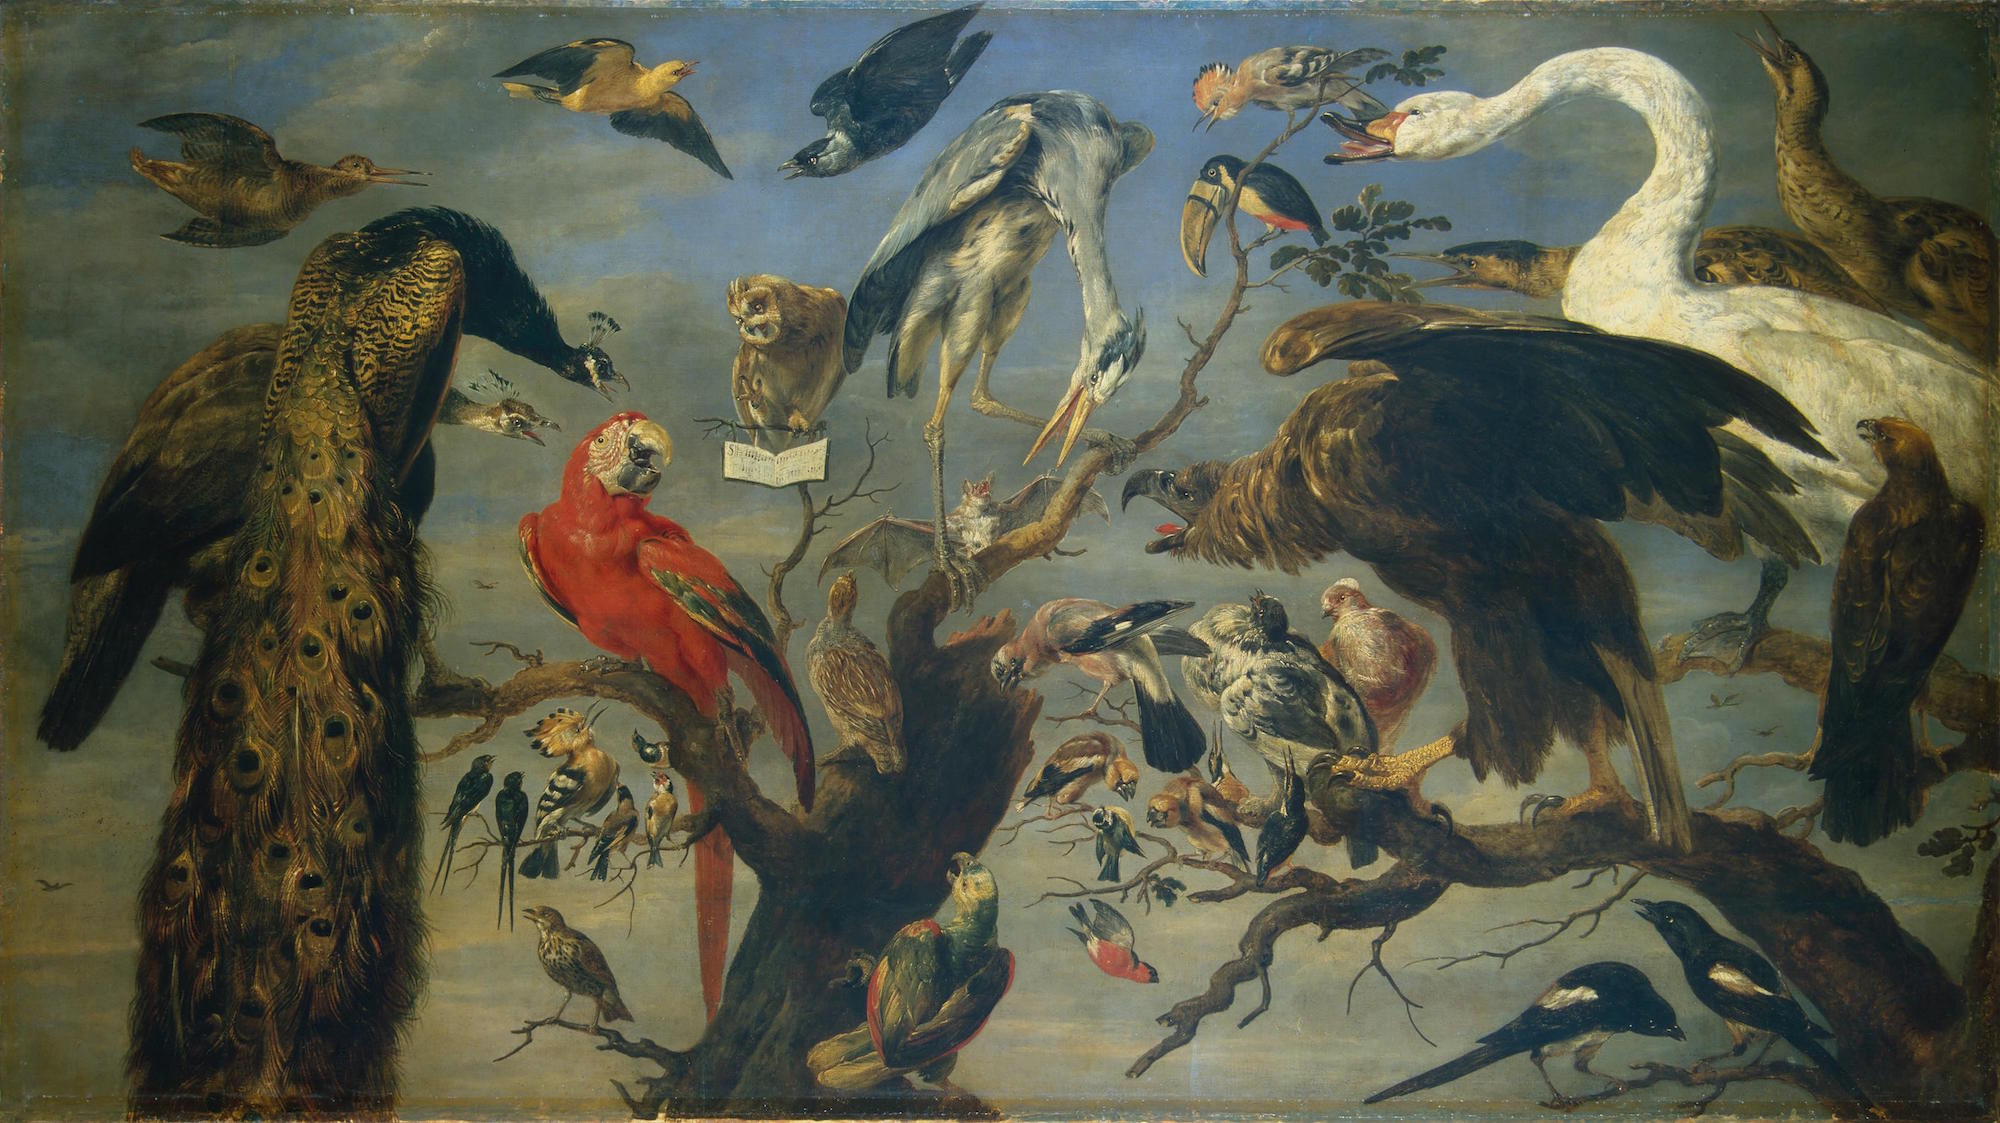 鳥類音樂會 by Frans Snyders - 大約1630-1640年 - 1365 x 240 cm 